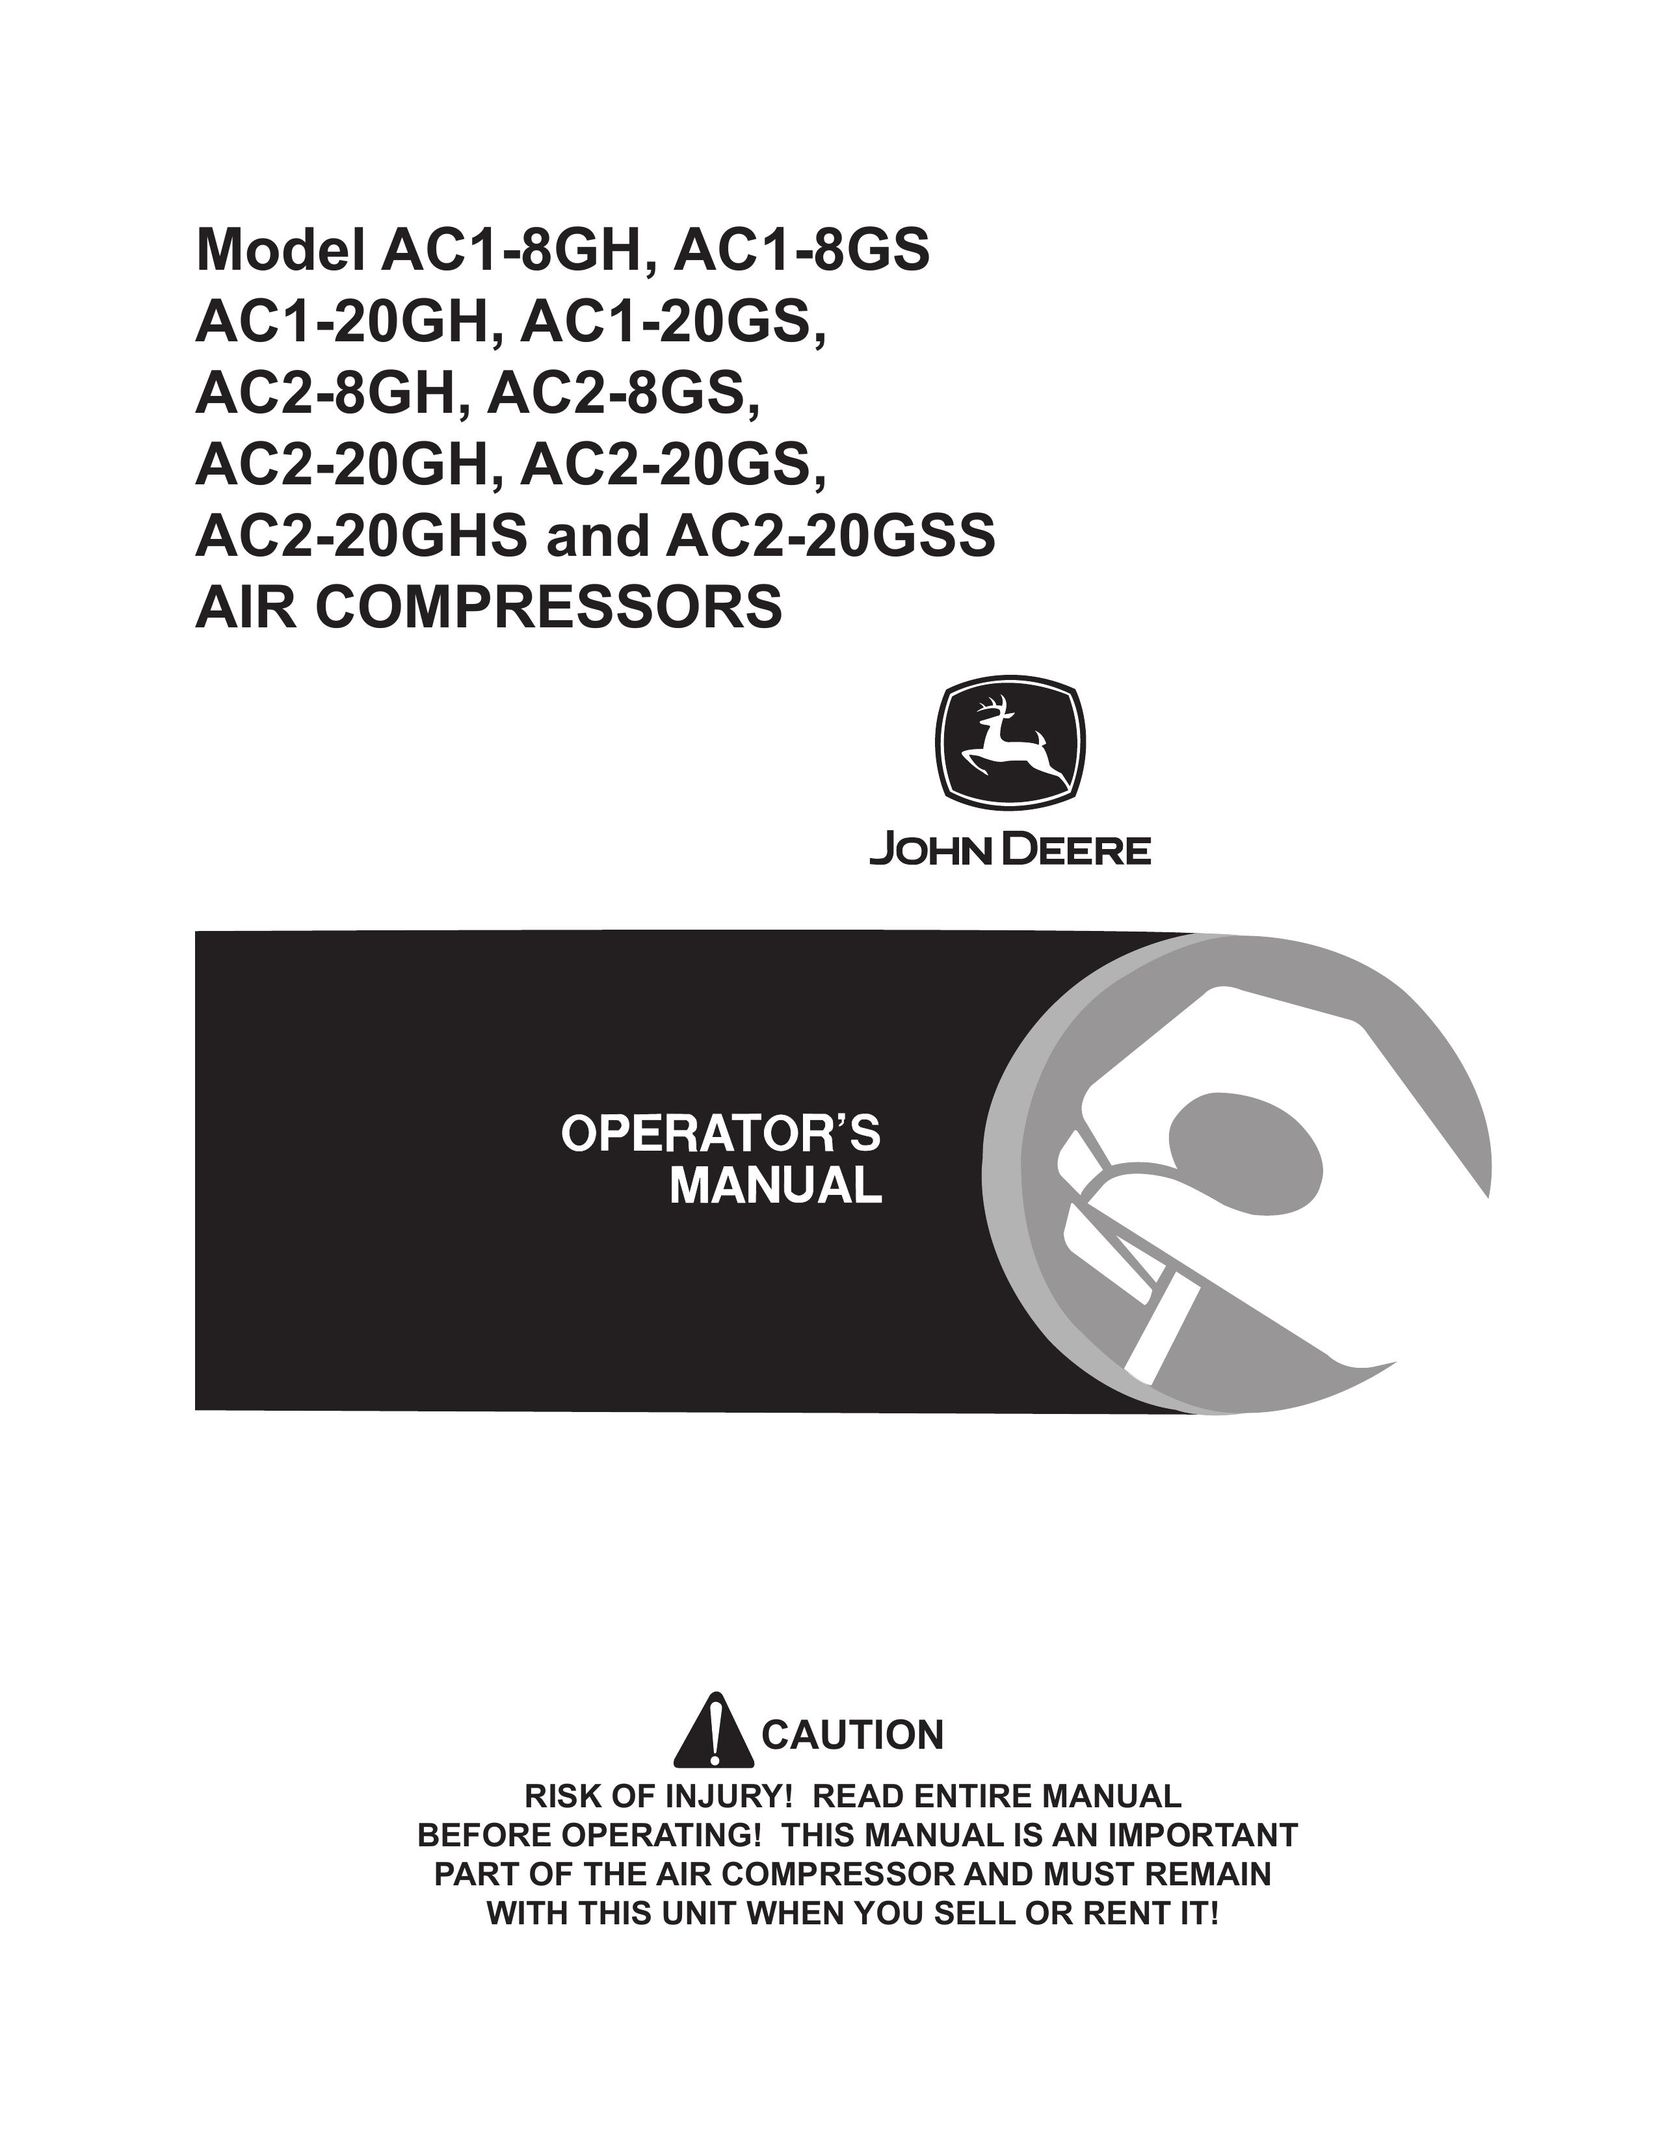 John Deere AC1-8GH Air Compressor User Manual